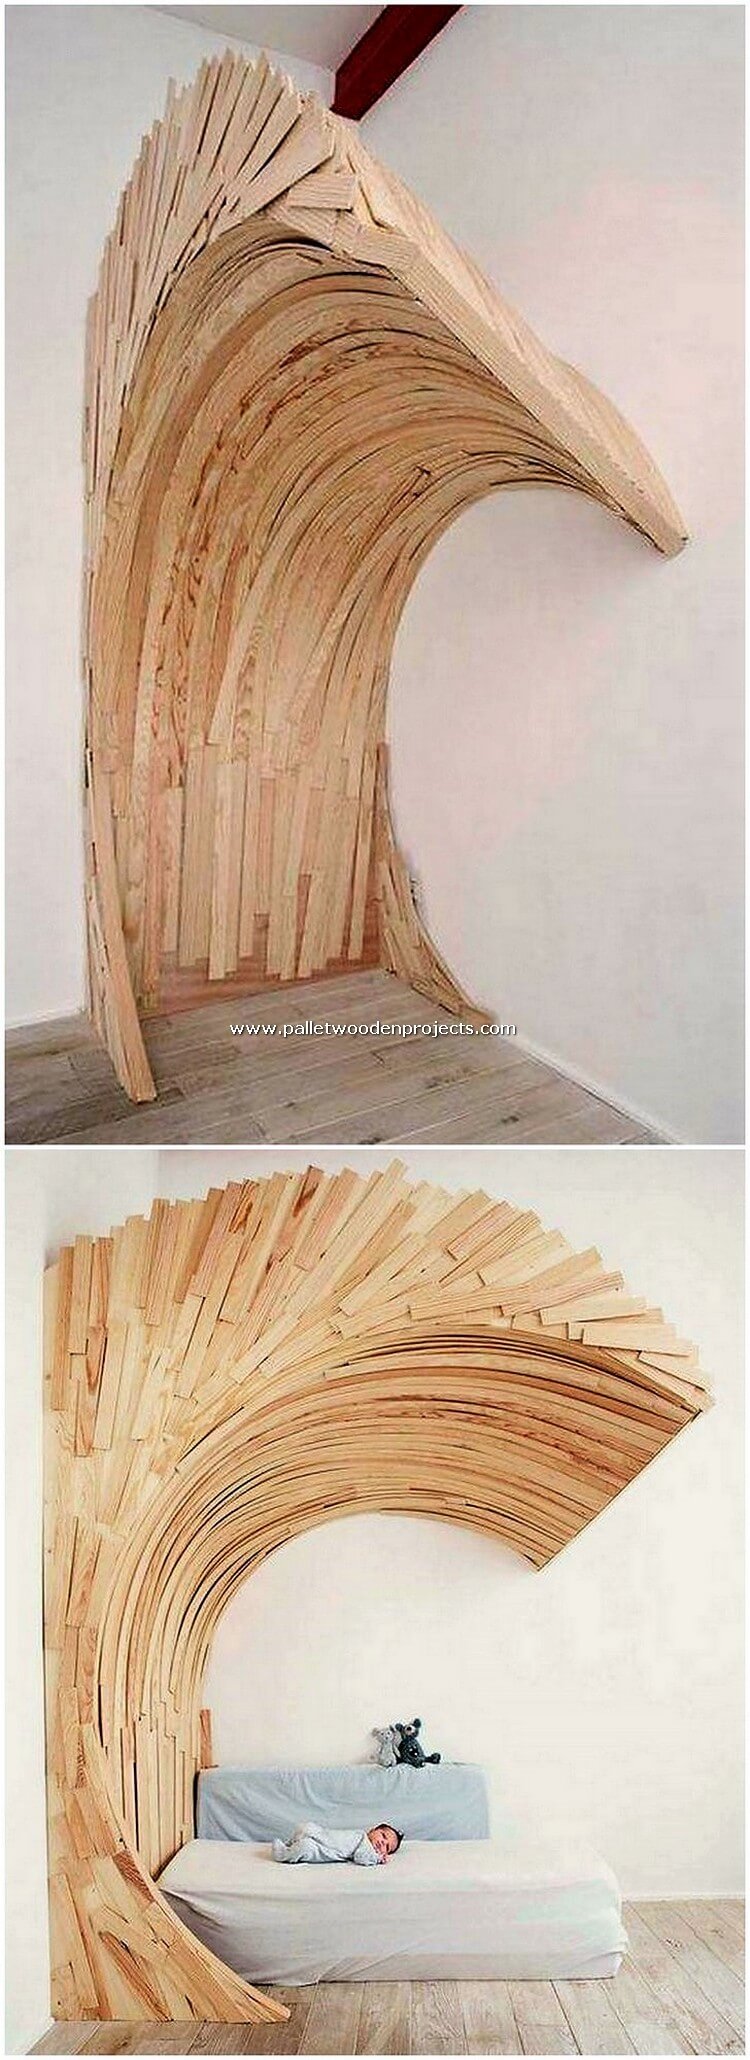 Creación de palets de madera.